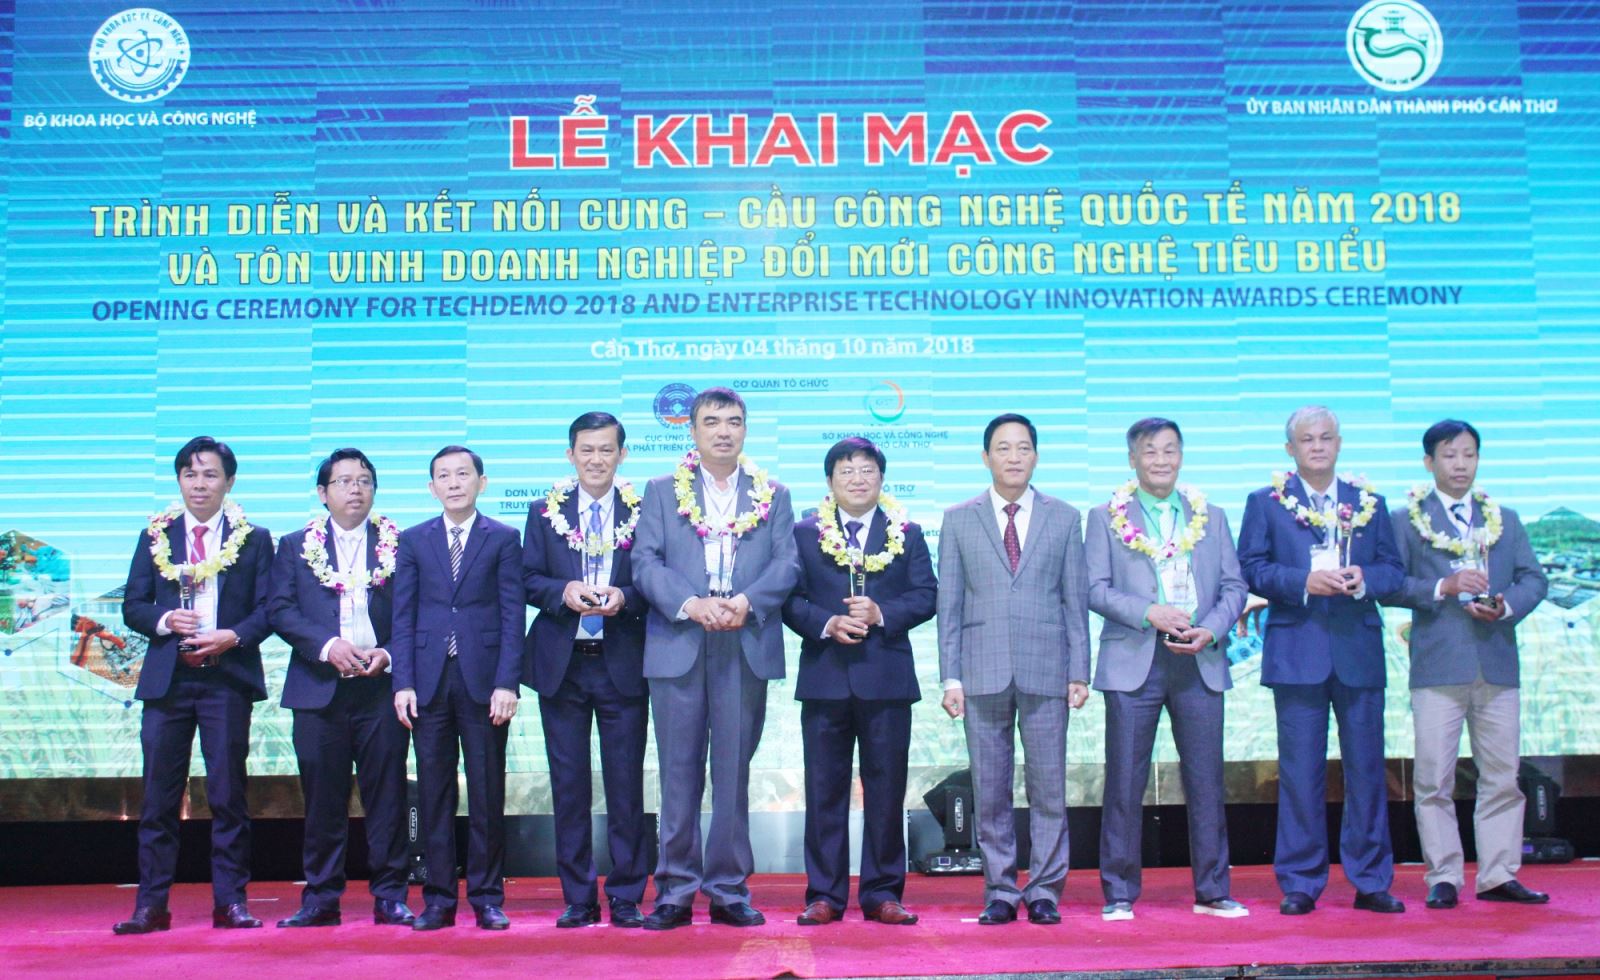 Chủ tịch UBND TP Cần Thơ Võ Thành Thống và Thứ trưởng Trần Văn Tùng trao danh hiệu cho 8 doanh nghiệp đổi mới công nghệ tiêu biểu